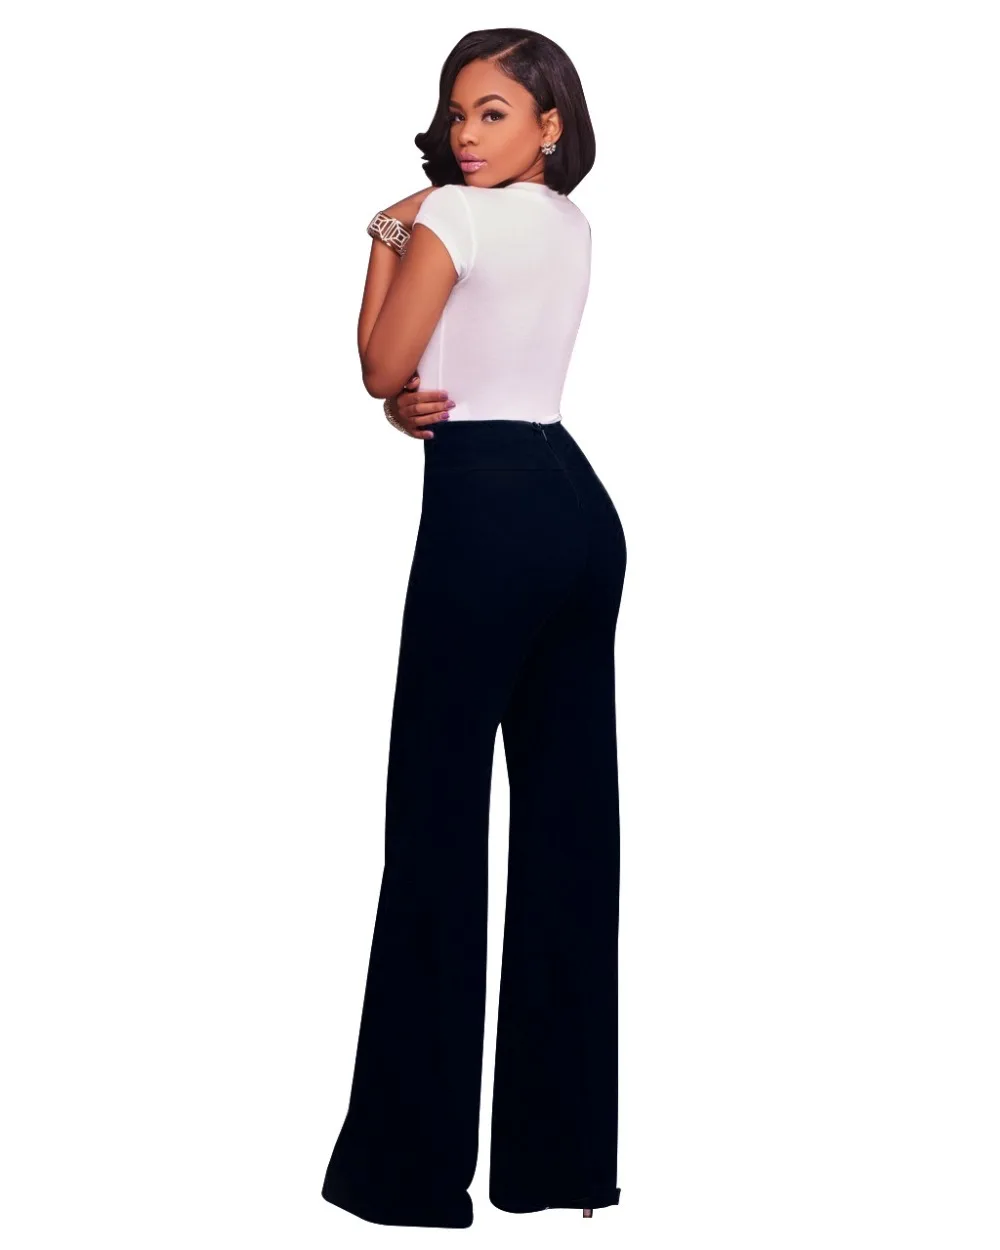 Короткие Feminino Cintura Alta шорты женские Бесплатная доставка Осень 2019 г. европейский и американский стиль новый молния повседневные брюки